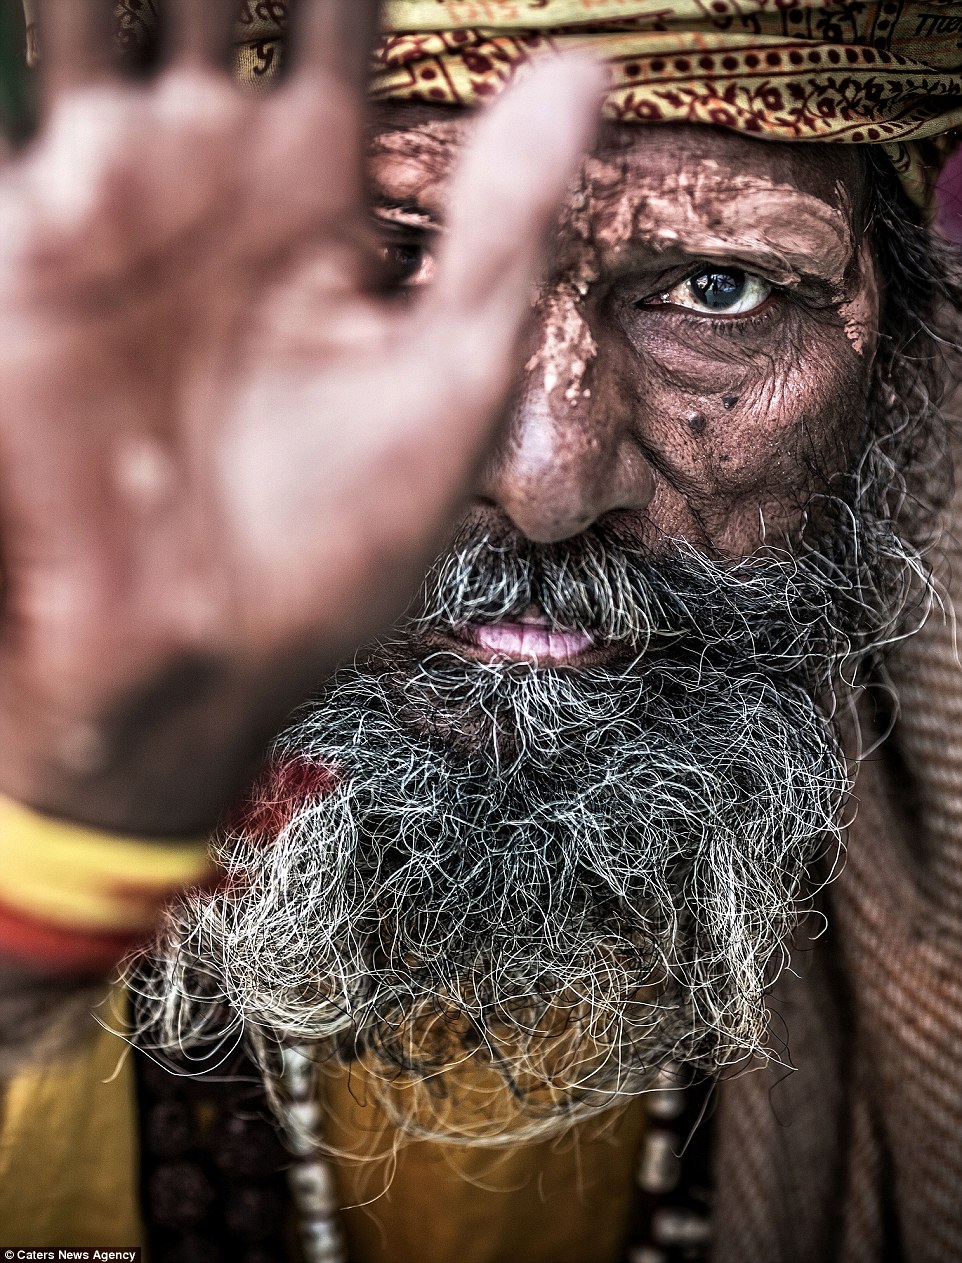 Монахи-людоеды Индии: как живут почитатели самой страшной секты? ФОТО